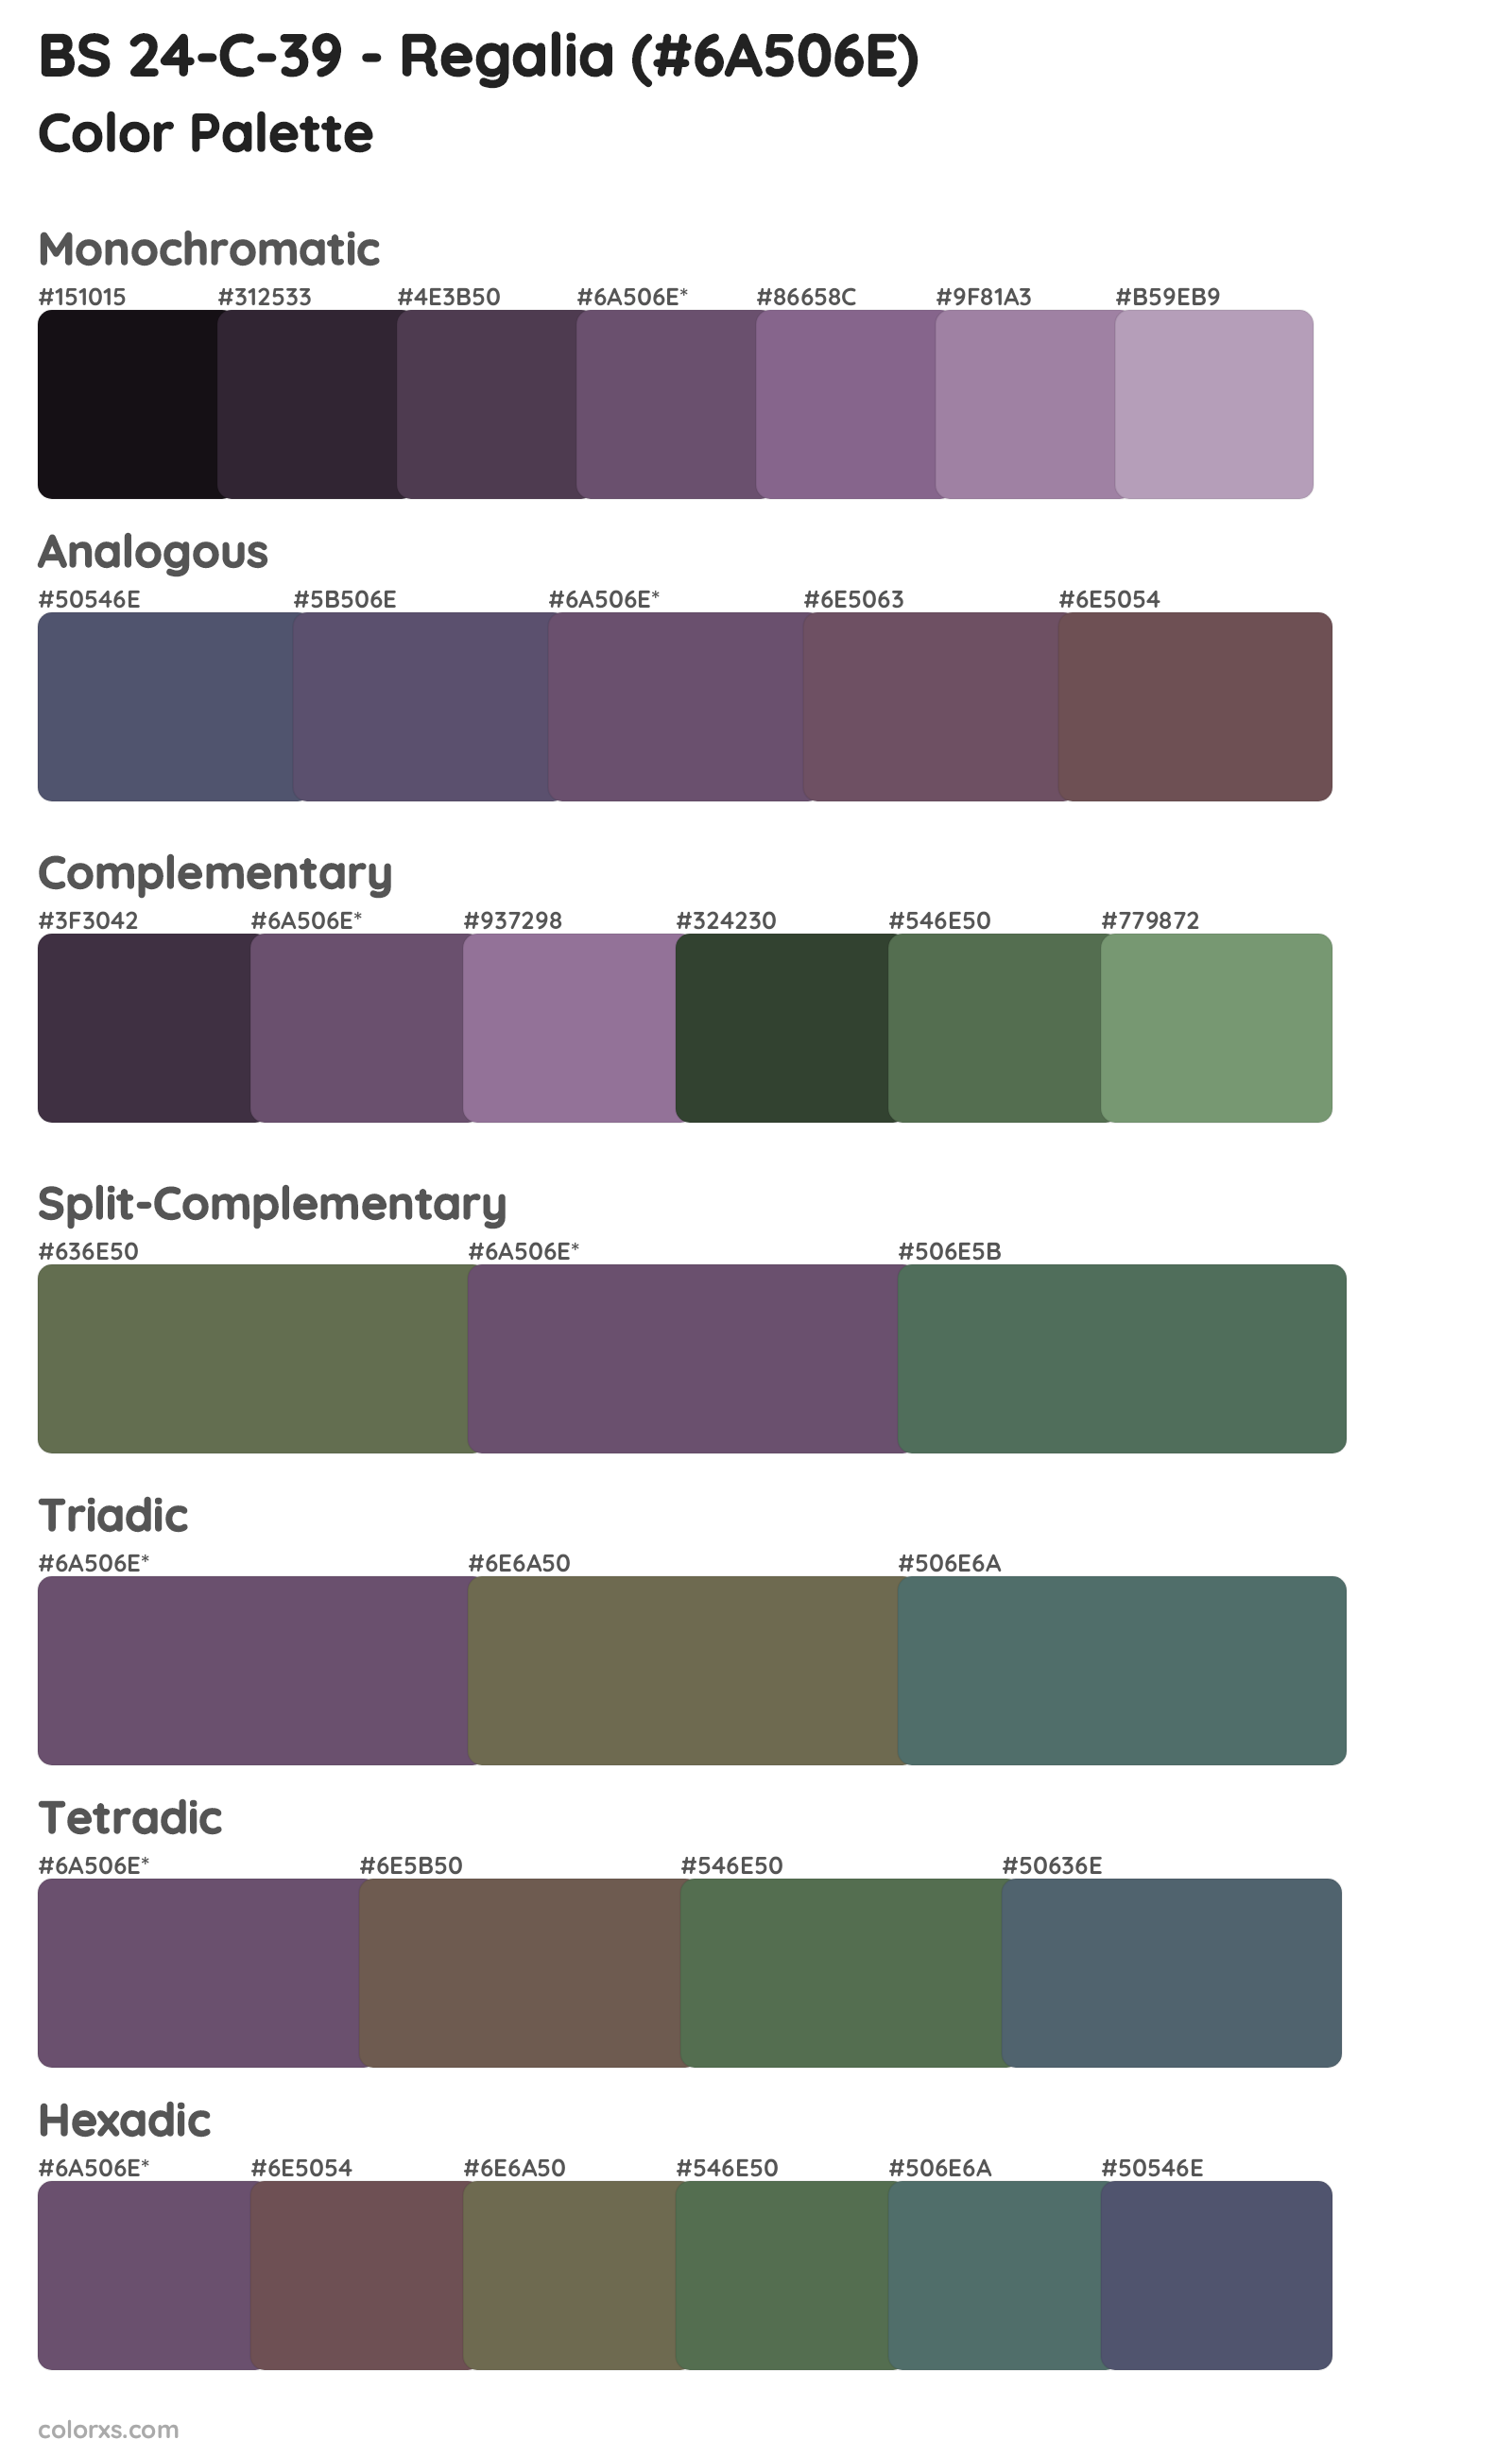 BS 24-C-39 - Regalia Color Scheme Palettes